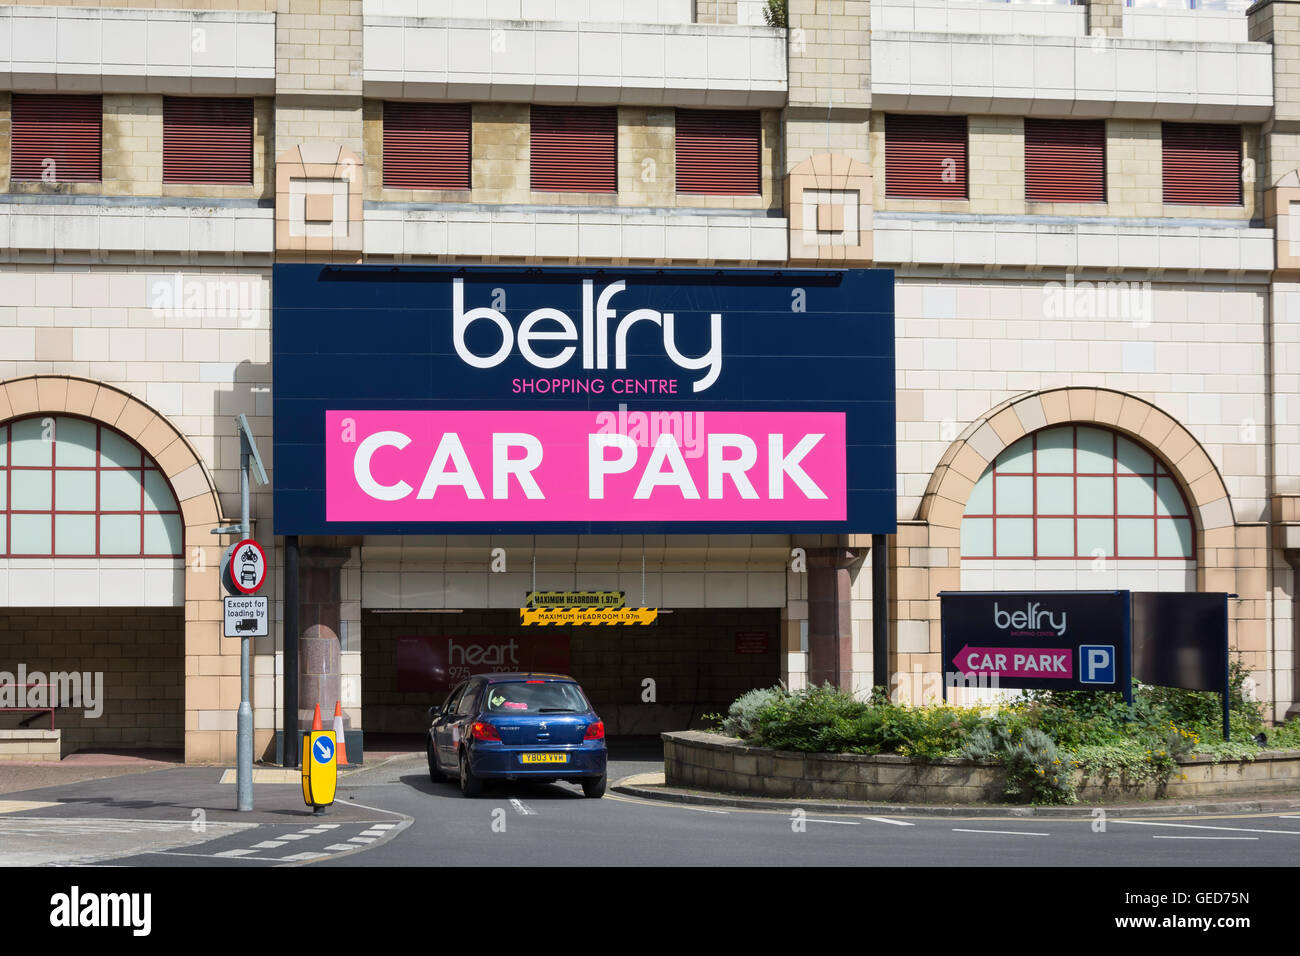 Entrée de parking du centre commercial du Beffroi, St Matthew's Road, Redhill, Surrey, Angleterre, Royaume-Uni Banque D'Images